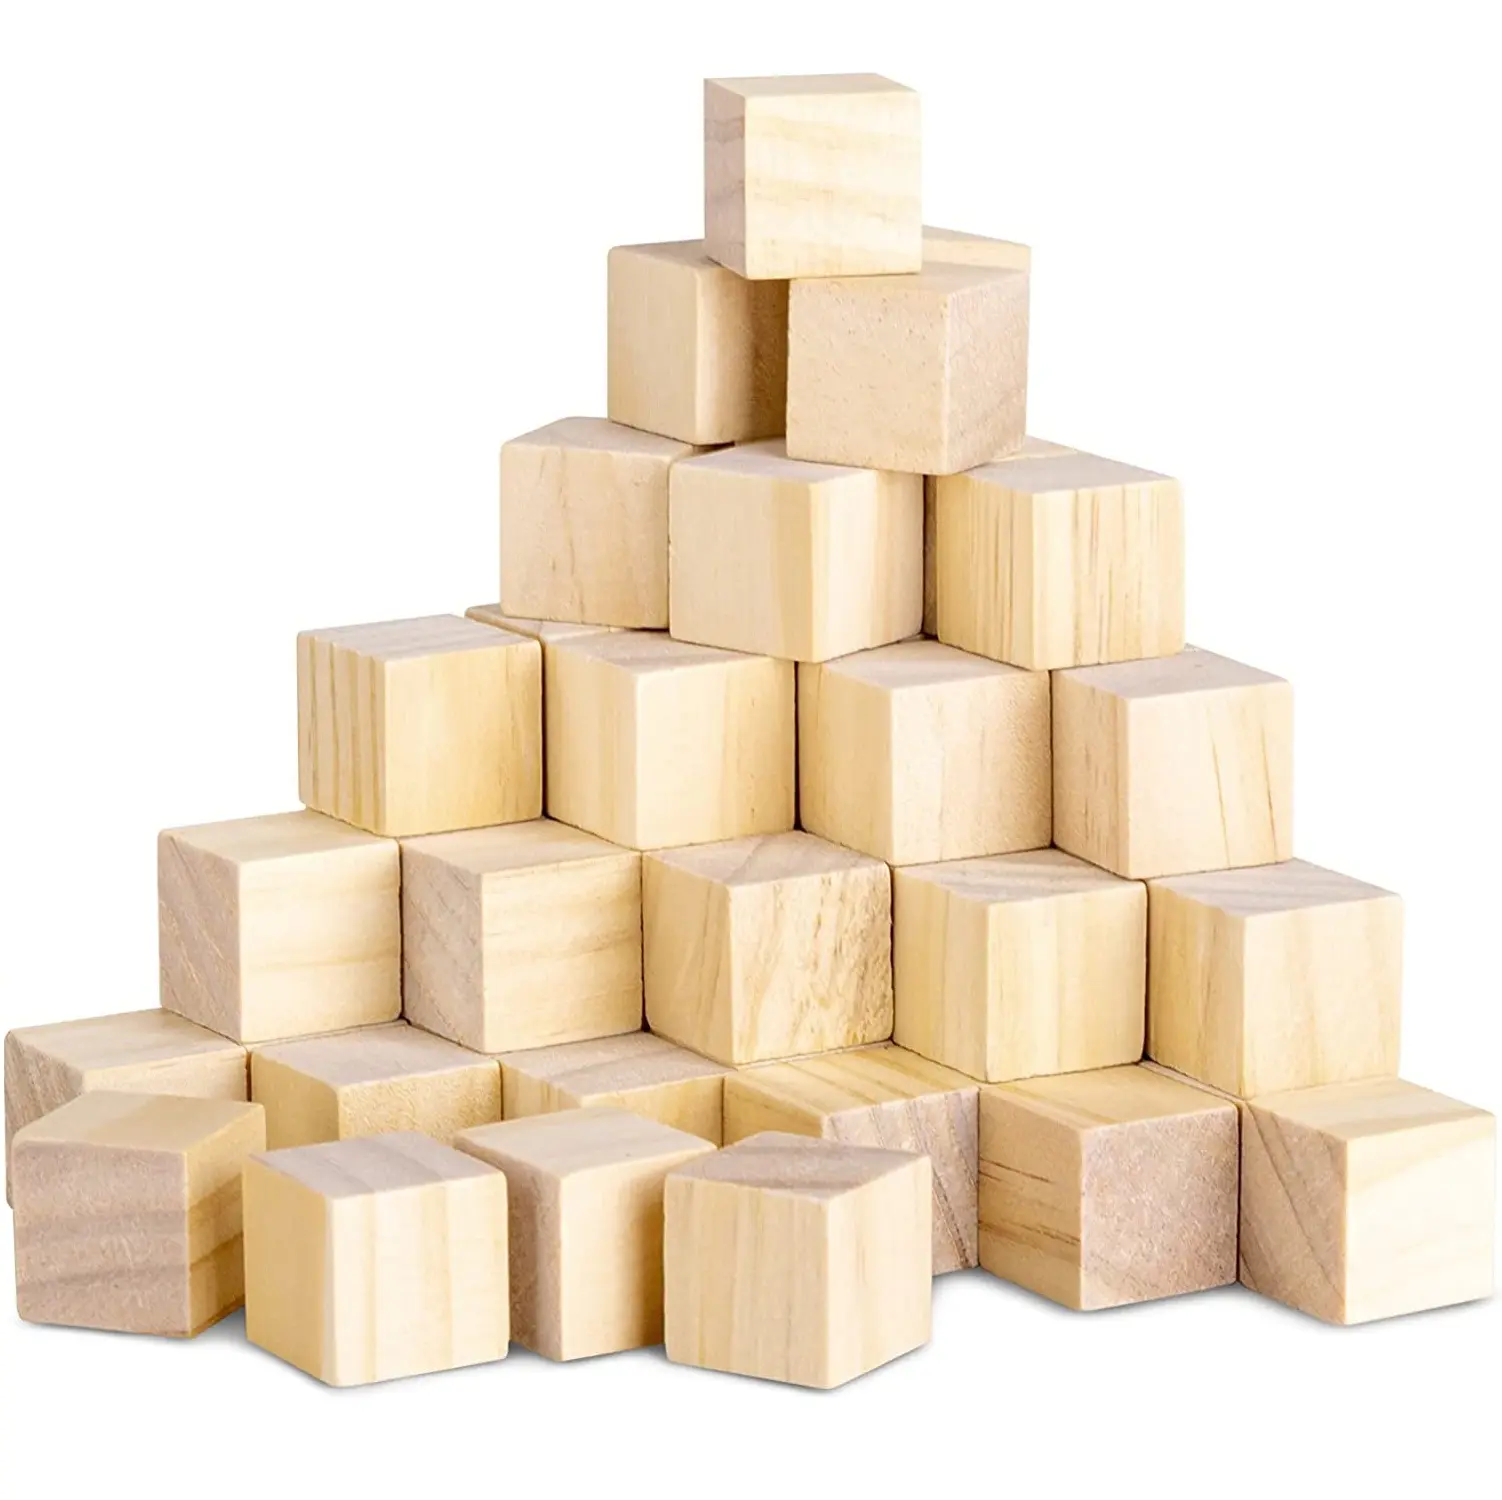 Les blocs de bois massif vierges naturels sont utilisés dans la fabrication de puzzles et les projets de bricolage pour les boîtes à blocs en bois non polies